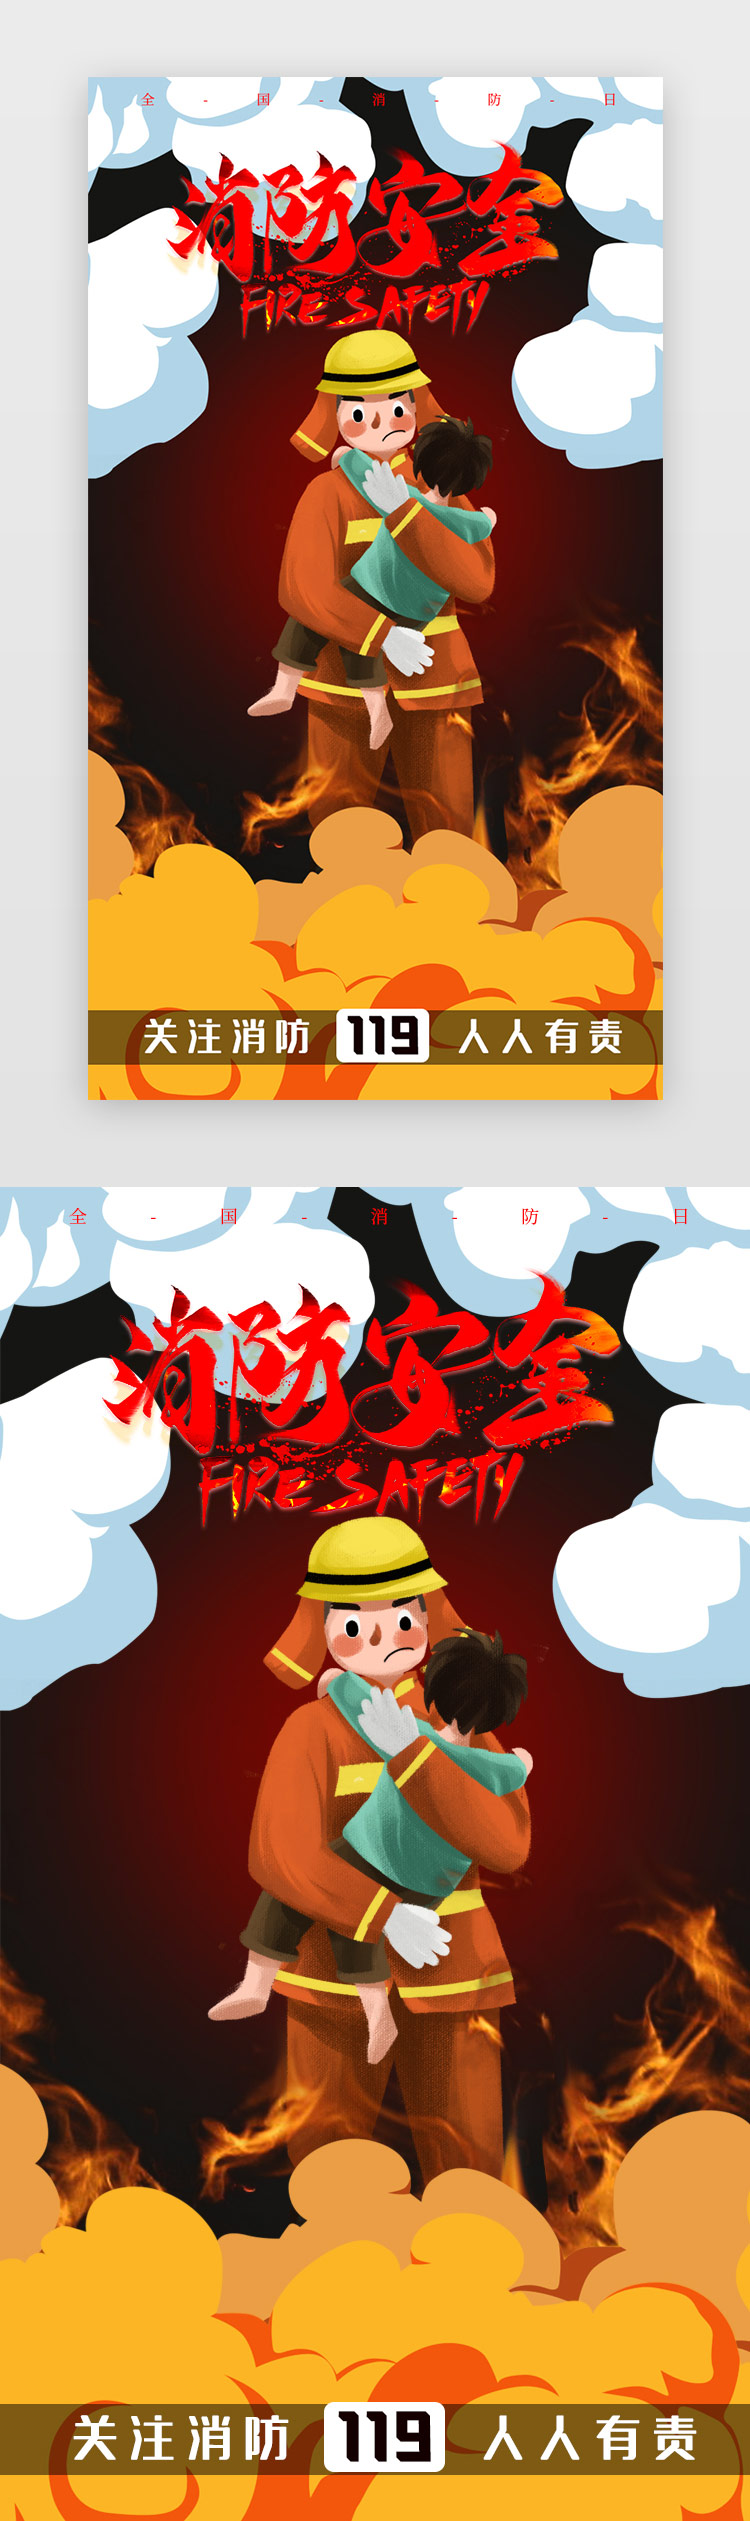 卡通全国消防日119宣传app闪屏海报图片